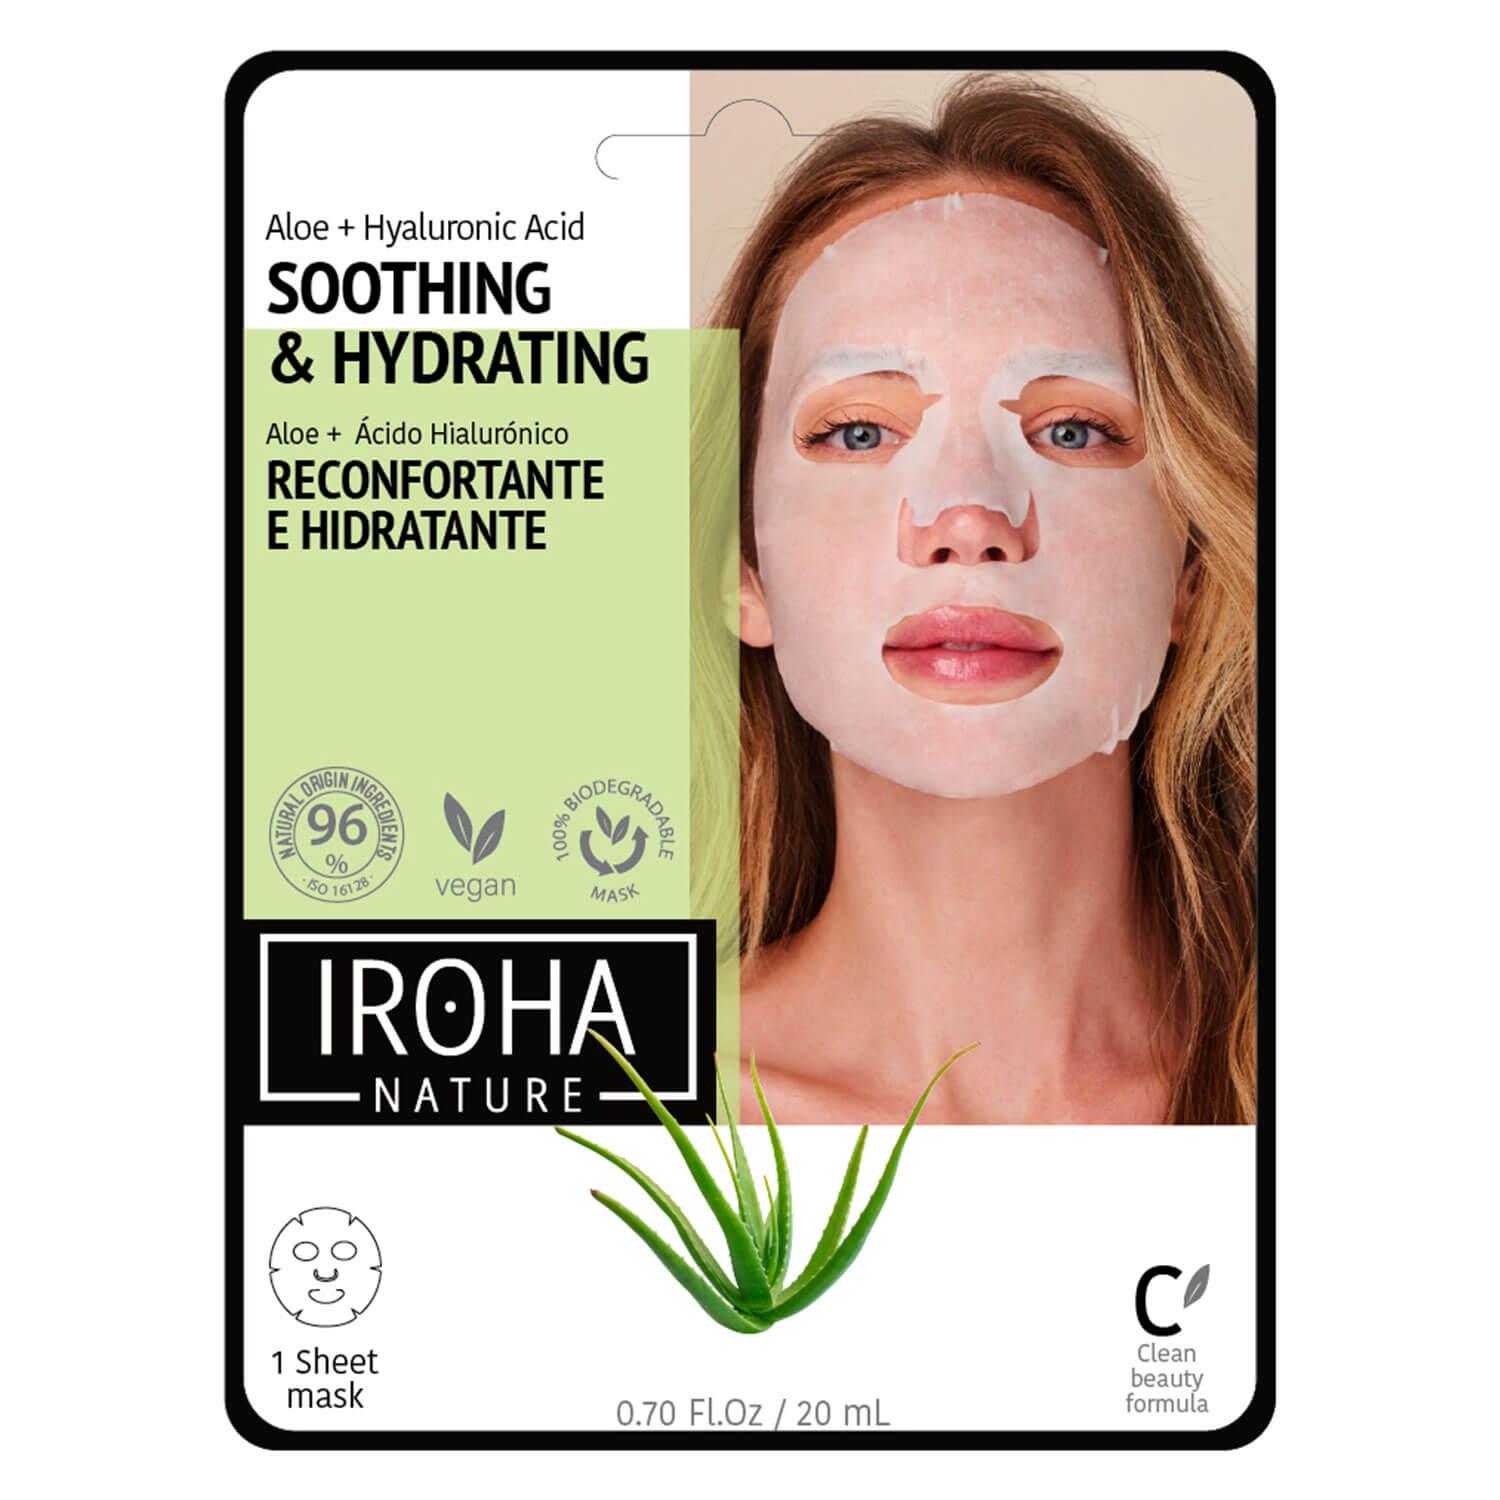 Iroha Nature - Soothing & Hydrating Aloe + Hyaluronic Acid Face Mask